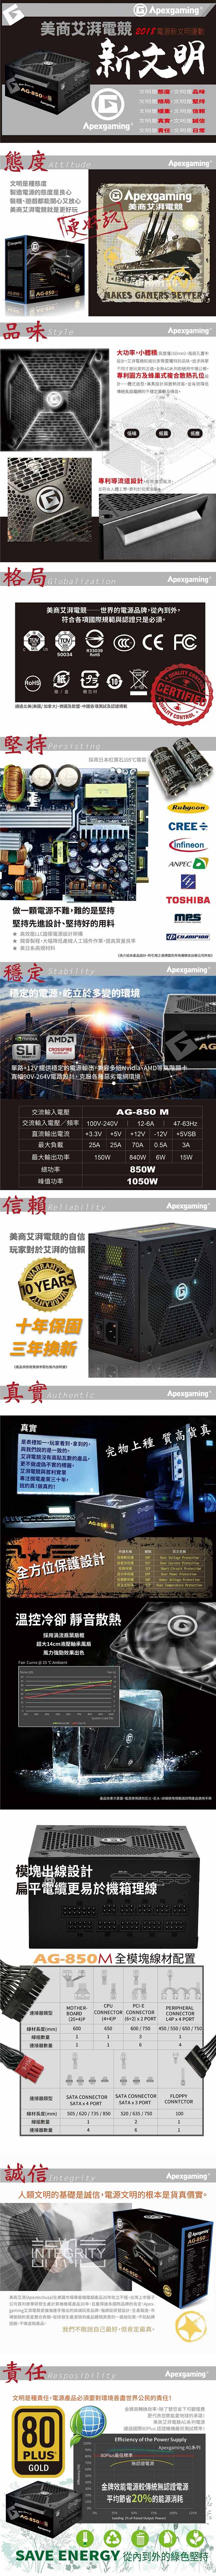 美商艾湃電競 Apexgaming AG-850M 850W 金牌全模組